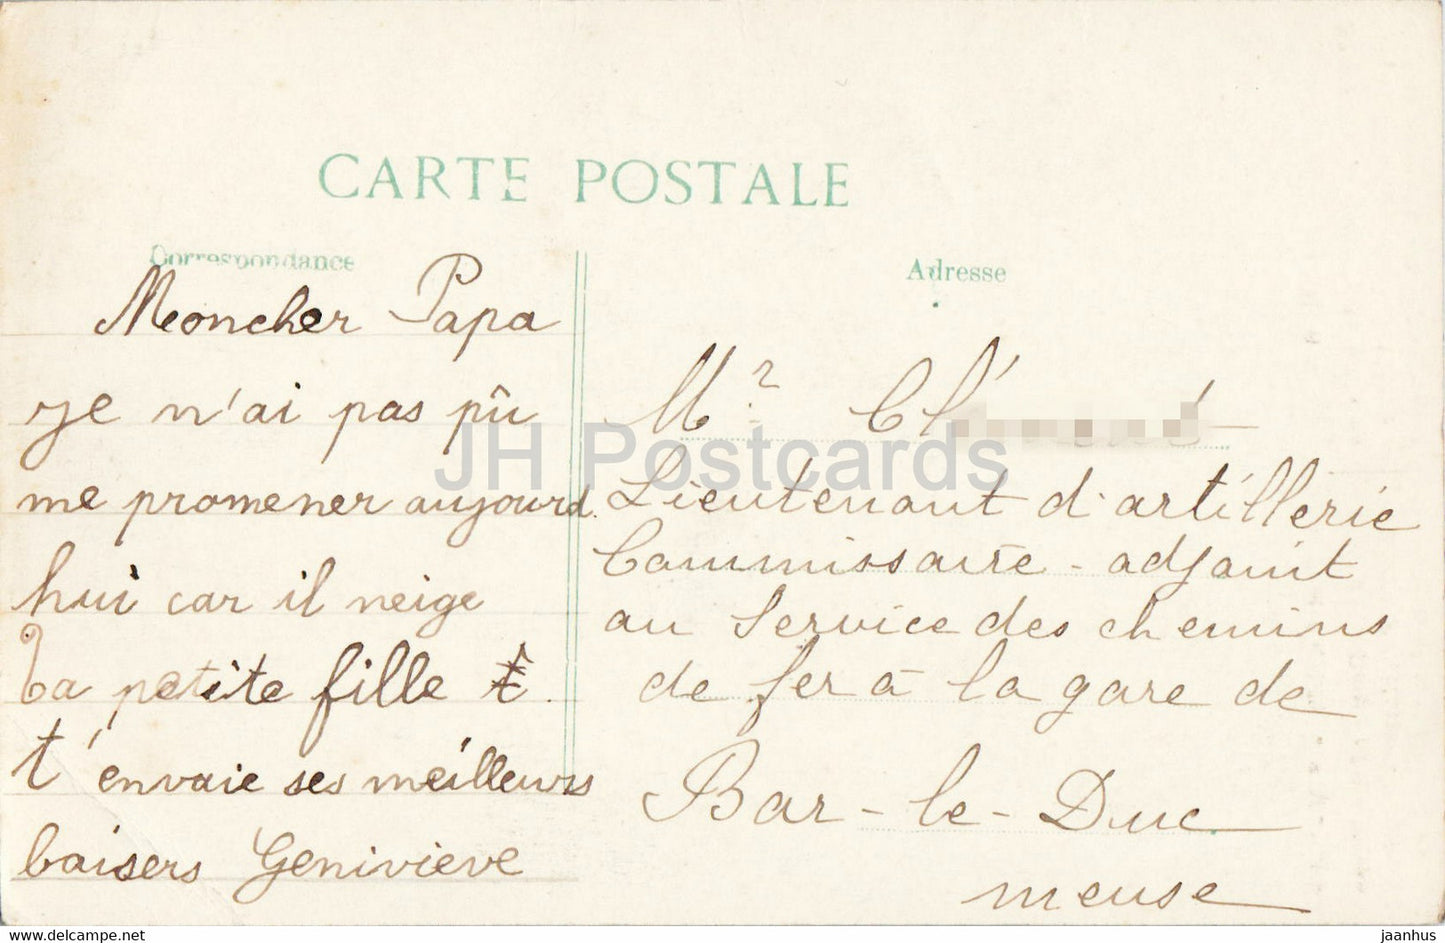 Maurupt - Intérieur de l'église après le bombardement - Bataille de la Marne 1914 - 37 - carte postale ancienne - France - occasion